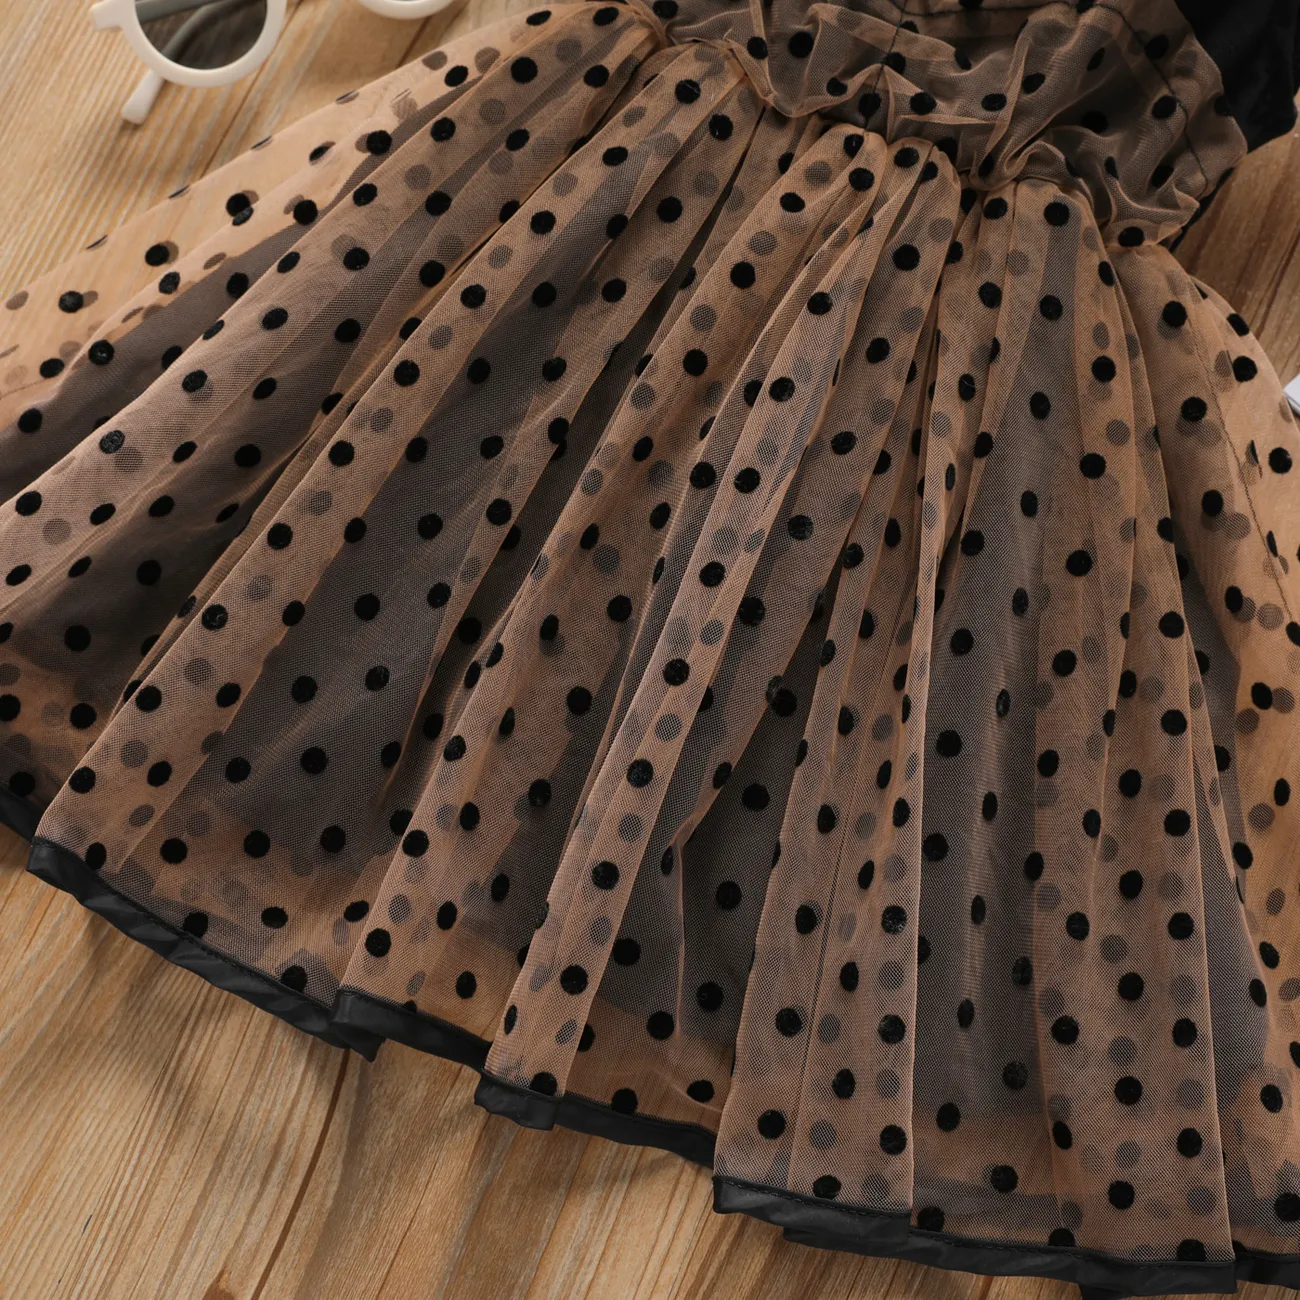 Toddler Girl Polka dots Flutter-sleeve Mesh Splice Dress Black big image 1